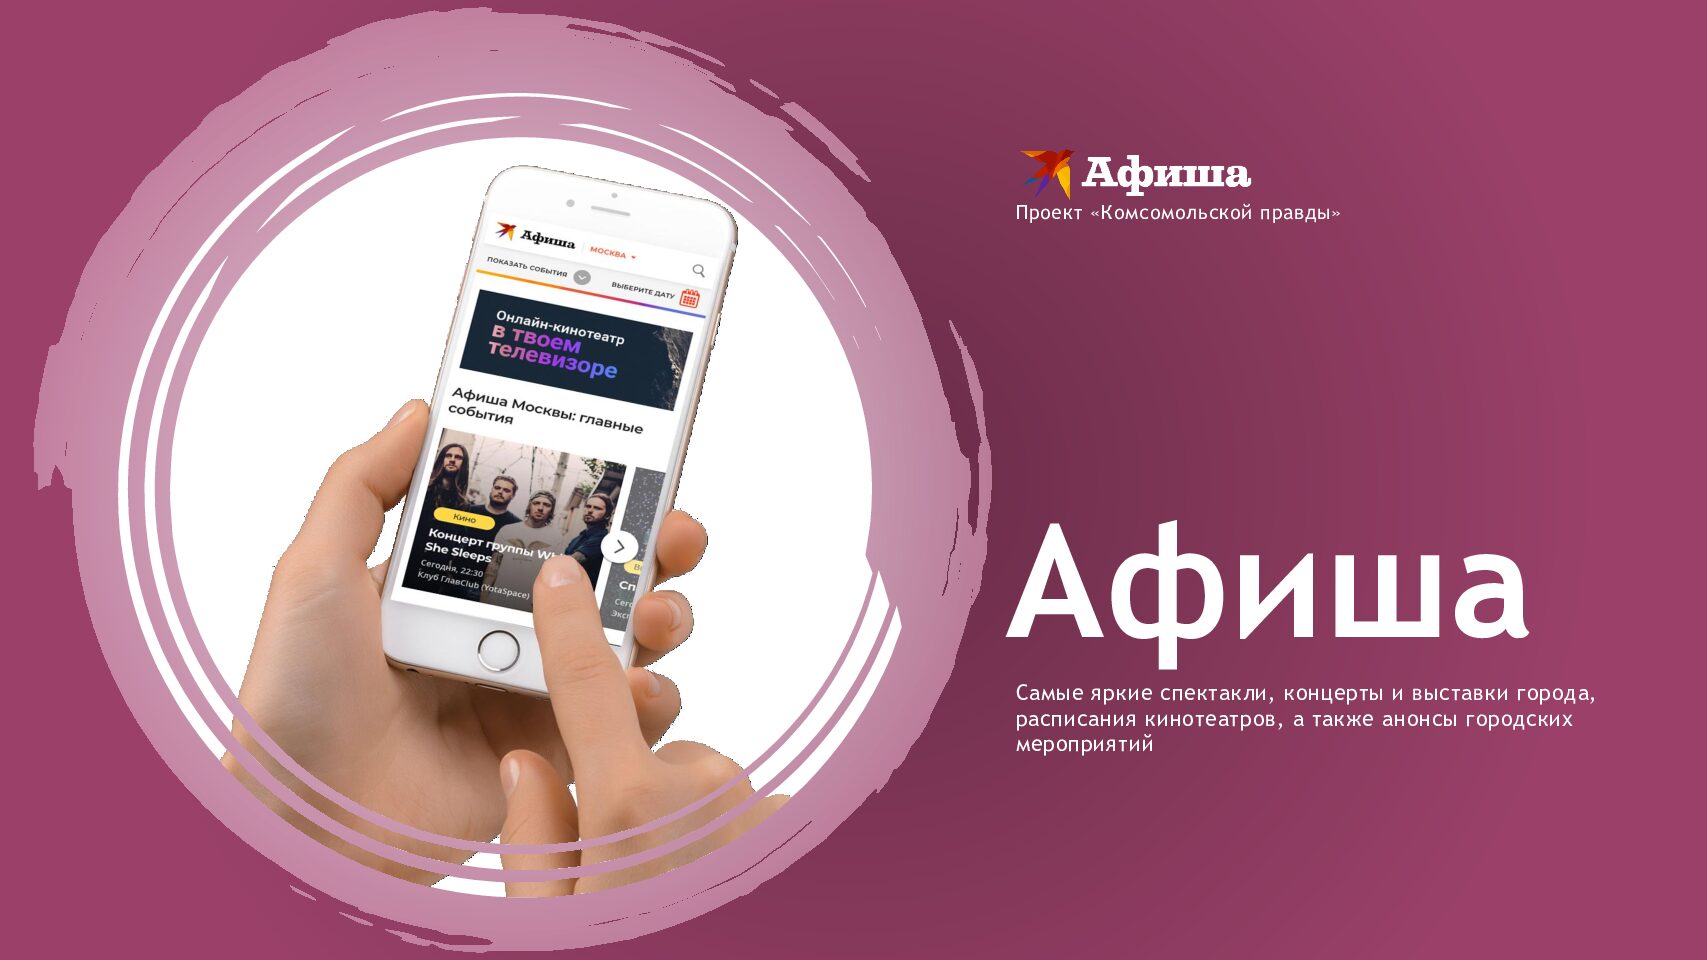 Спецраздел «Афиша» на kp.ru